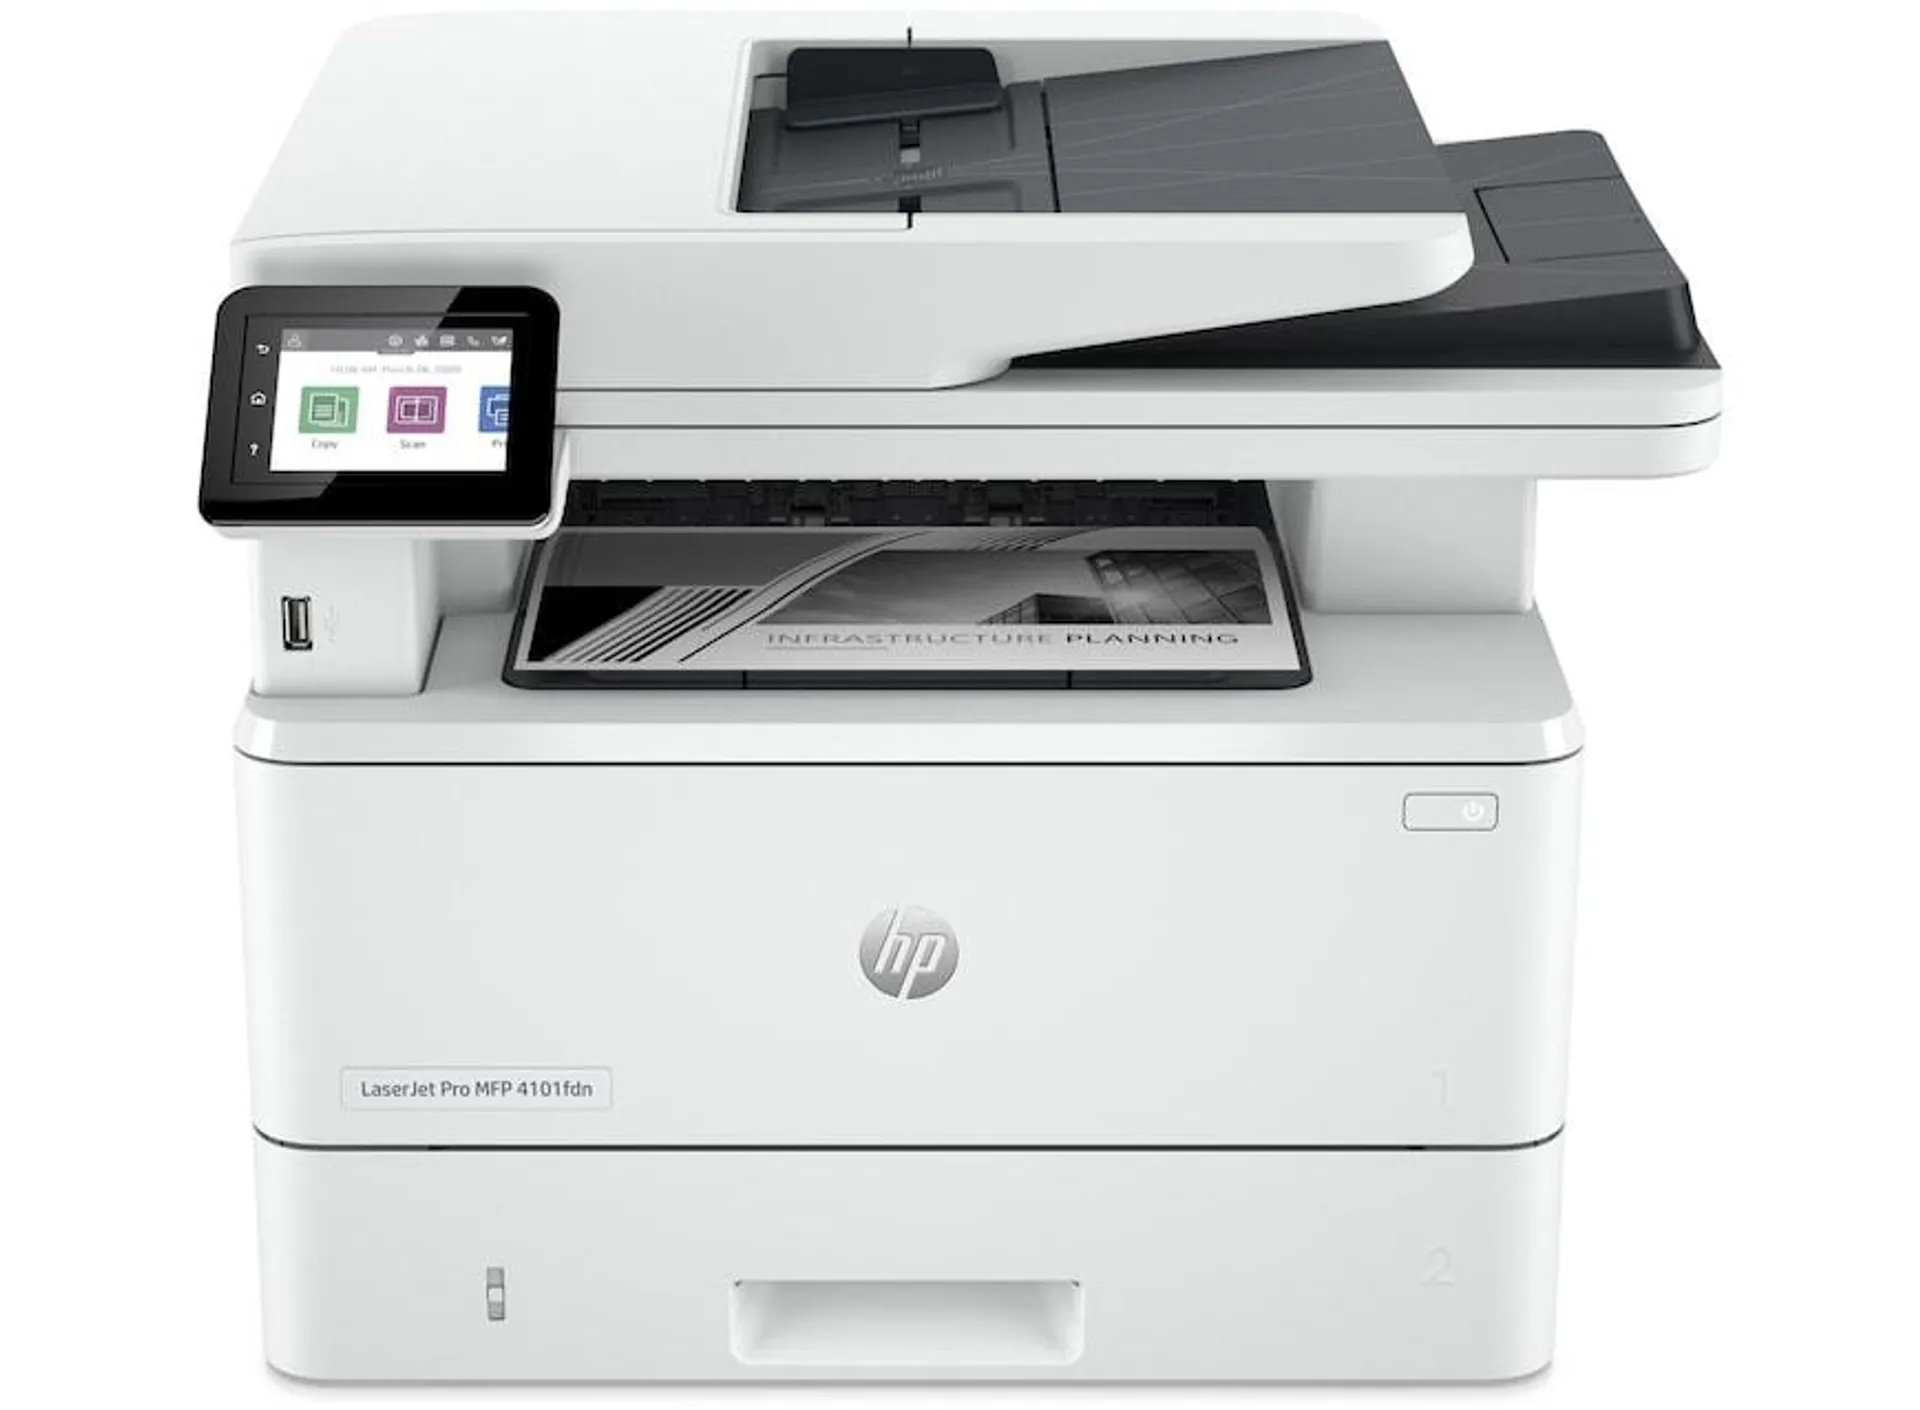 HP LaserJet Pro MFP 4102fdw Black & White Wireless Printer